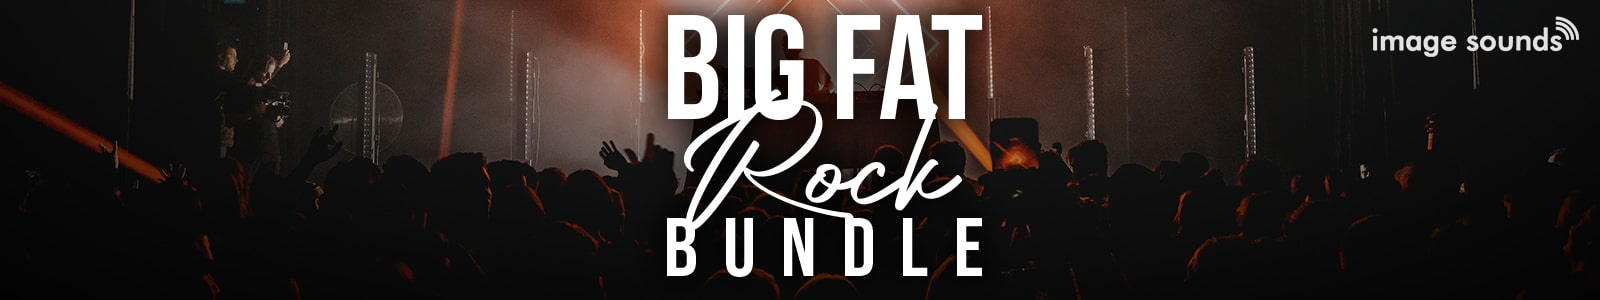 big fat rock bundle by image sounds